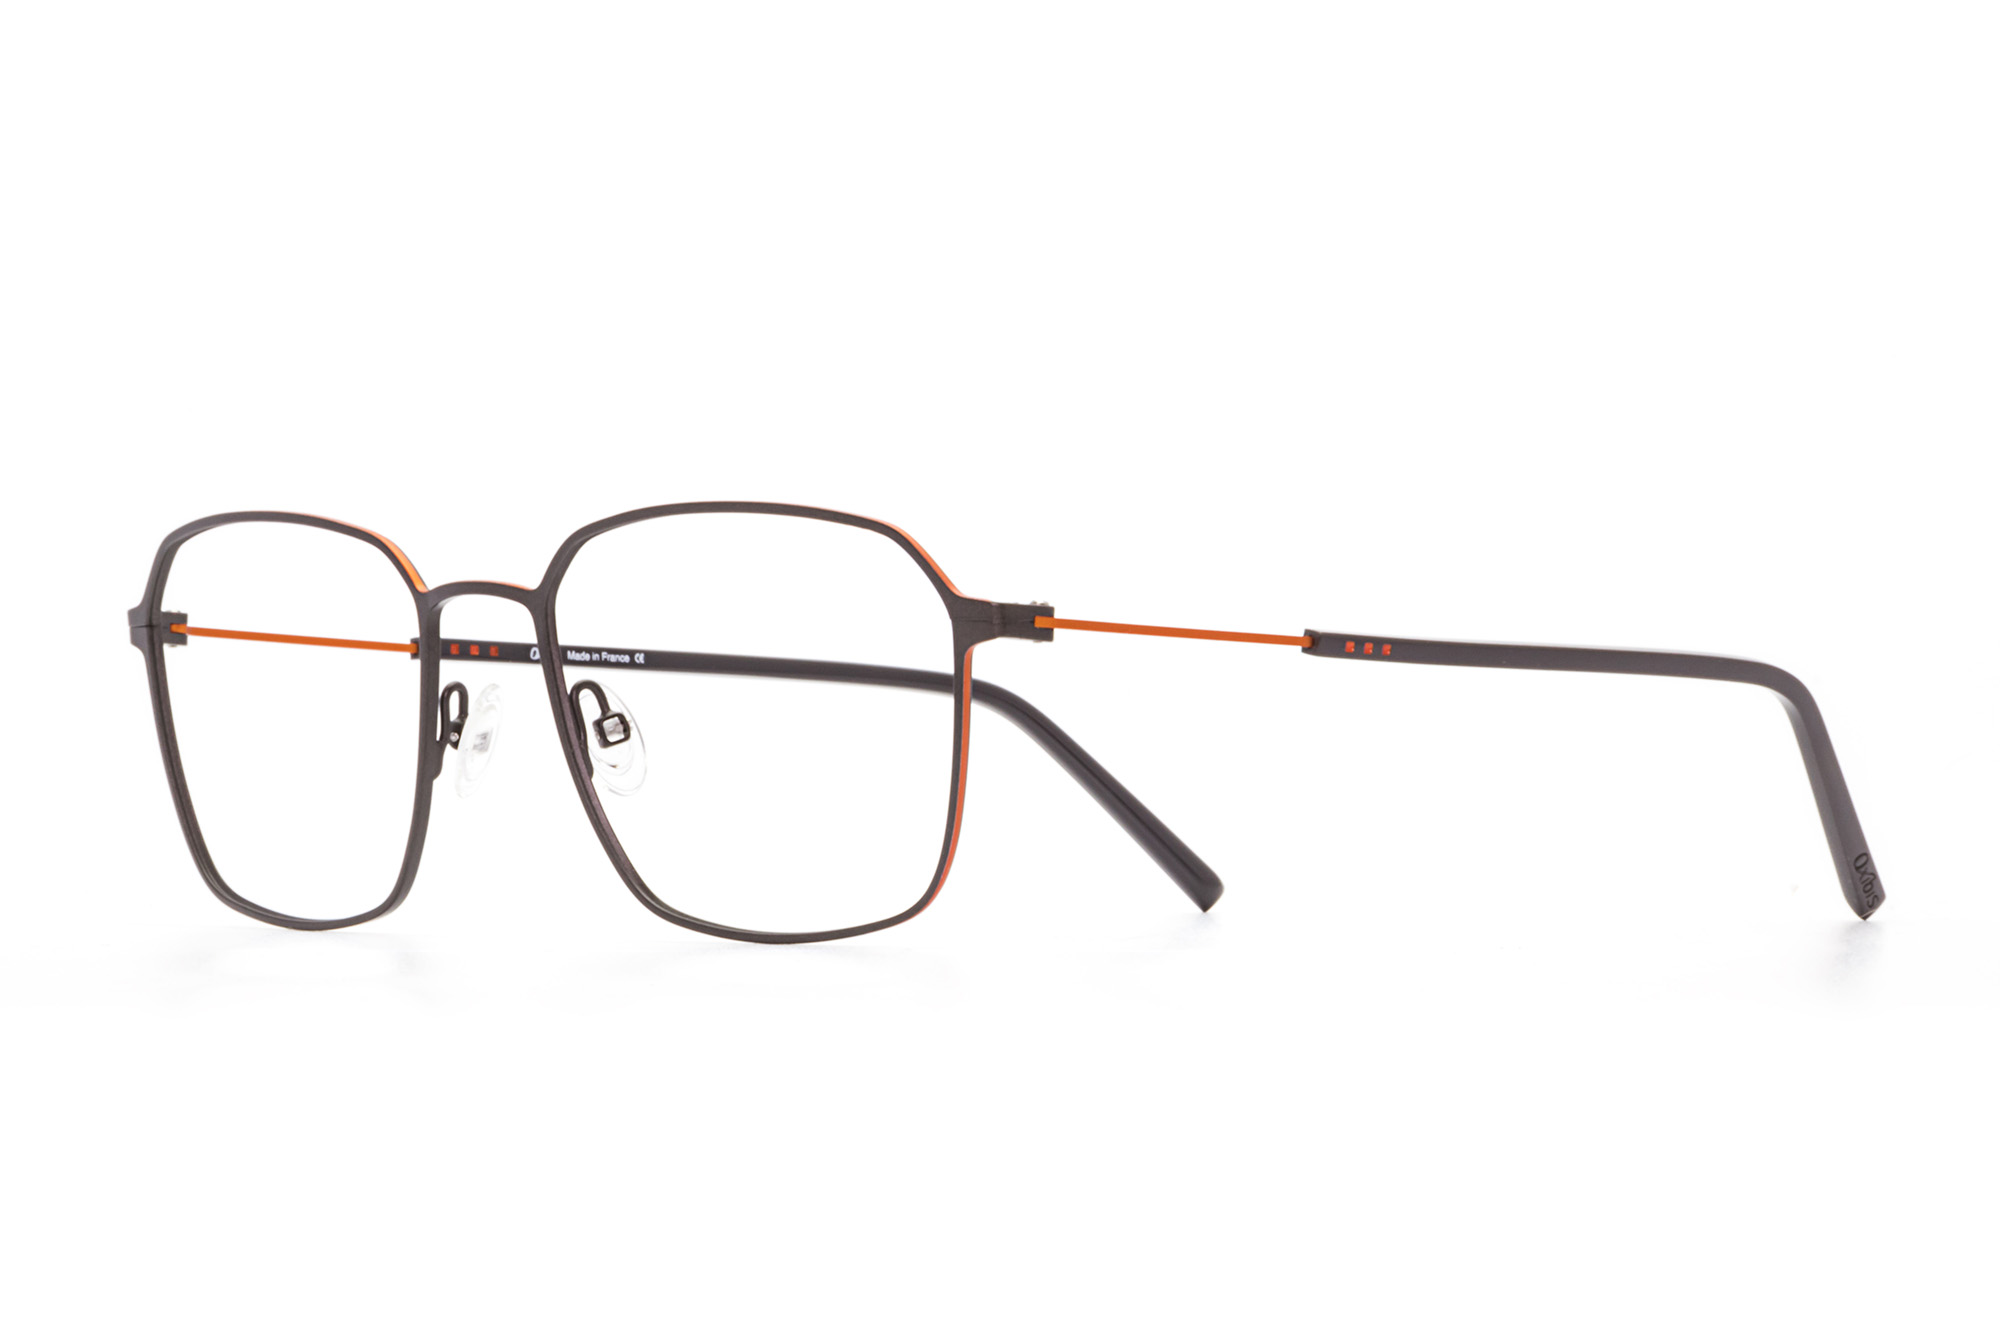 Kullanıma hazır optik tarzda işlenmiş camları ve optik uyumlu çerçevesiyle Oxibis Boost BO5C5 55 büyük ekartman gri ve turuncu renkli altıgen ve dikdörtgen model erkek gözlüğünü optisyen veya gözlükçülerin sunacağı numarasız veya numaralı cam özelleştirmeleriyle size en yakın gözlükçüden satın alabilirsiniz.